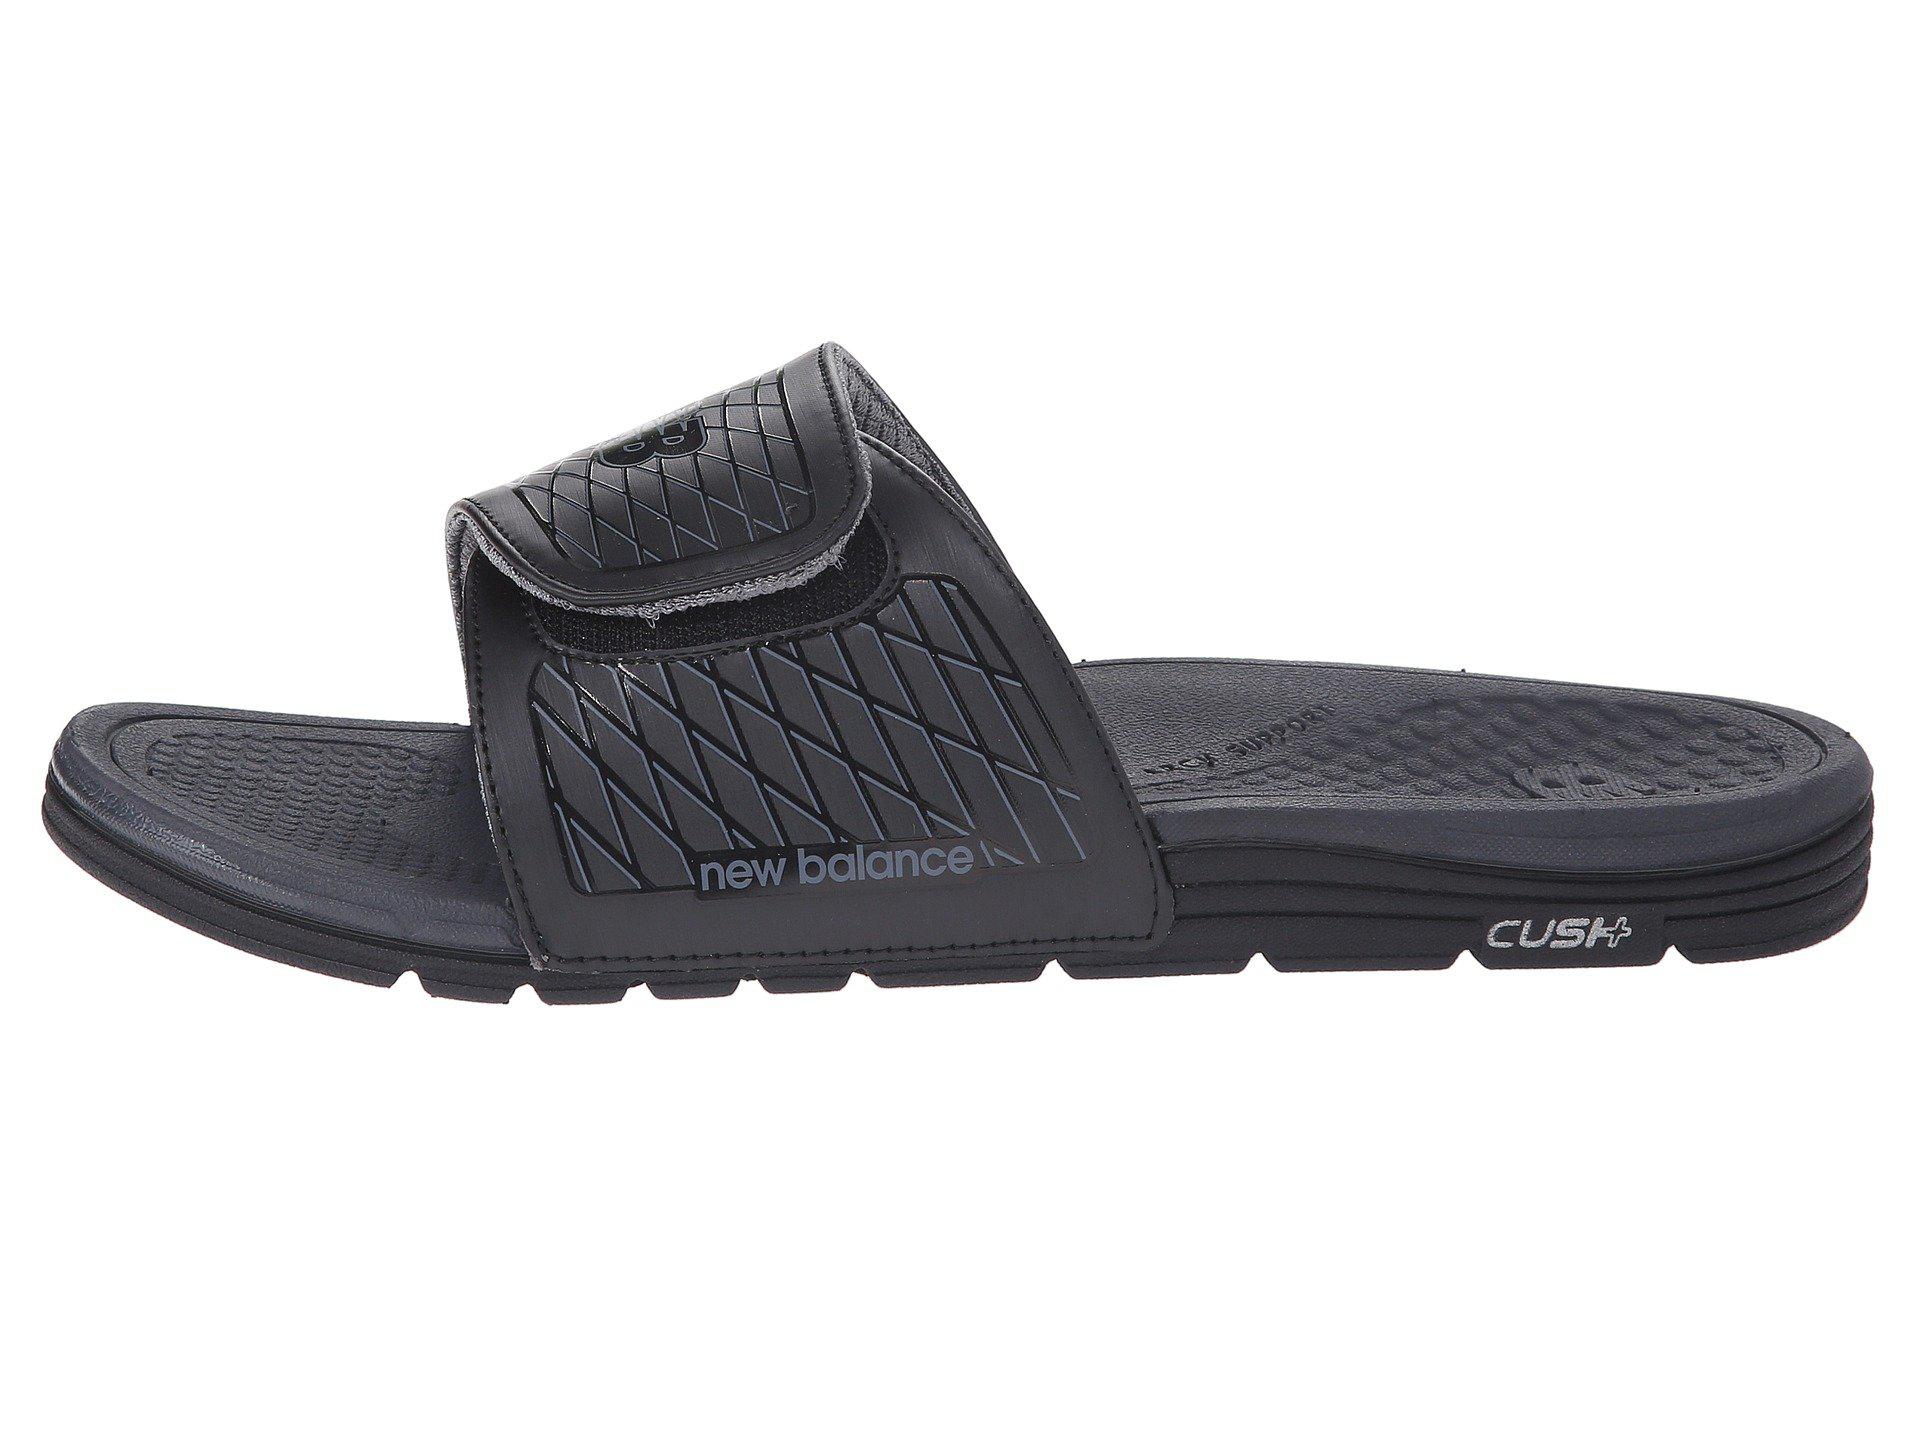 Lyst - New Balance Cush+ Slide (black/grey) Men's Sandals in Black for Men